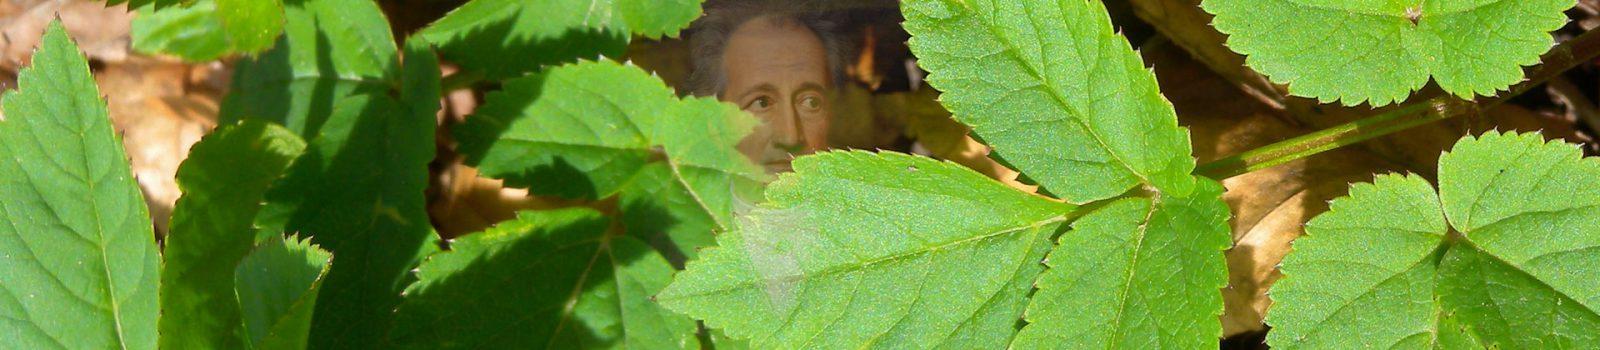 2005: Het onkruid van Goethe